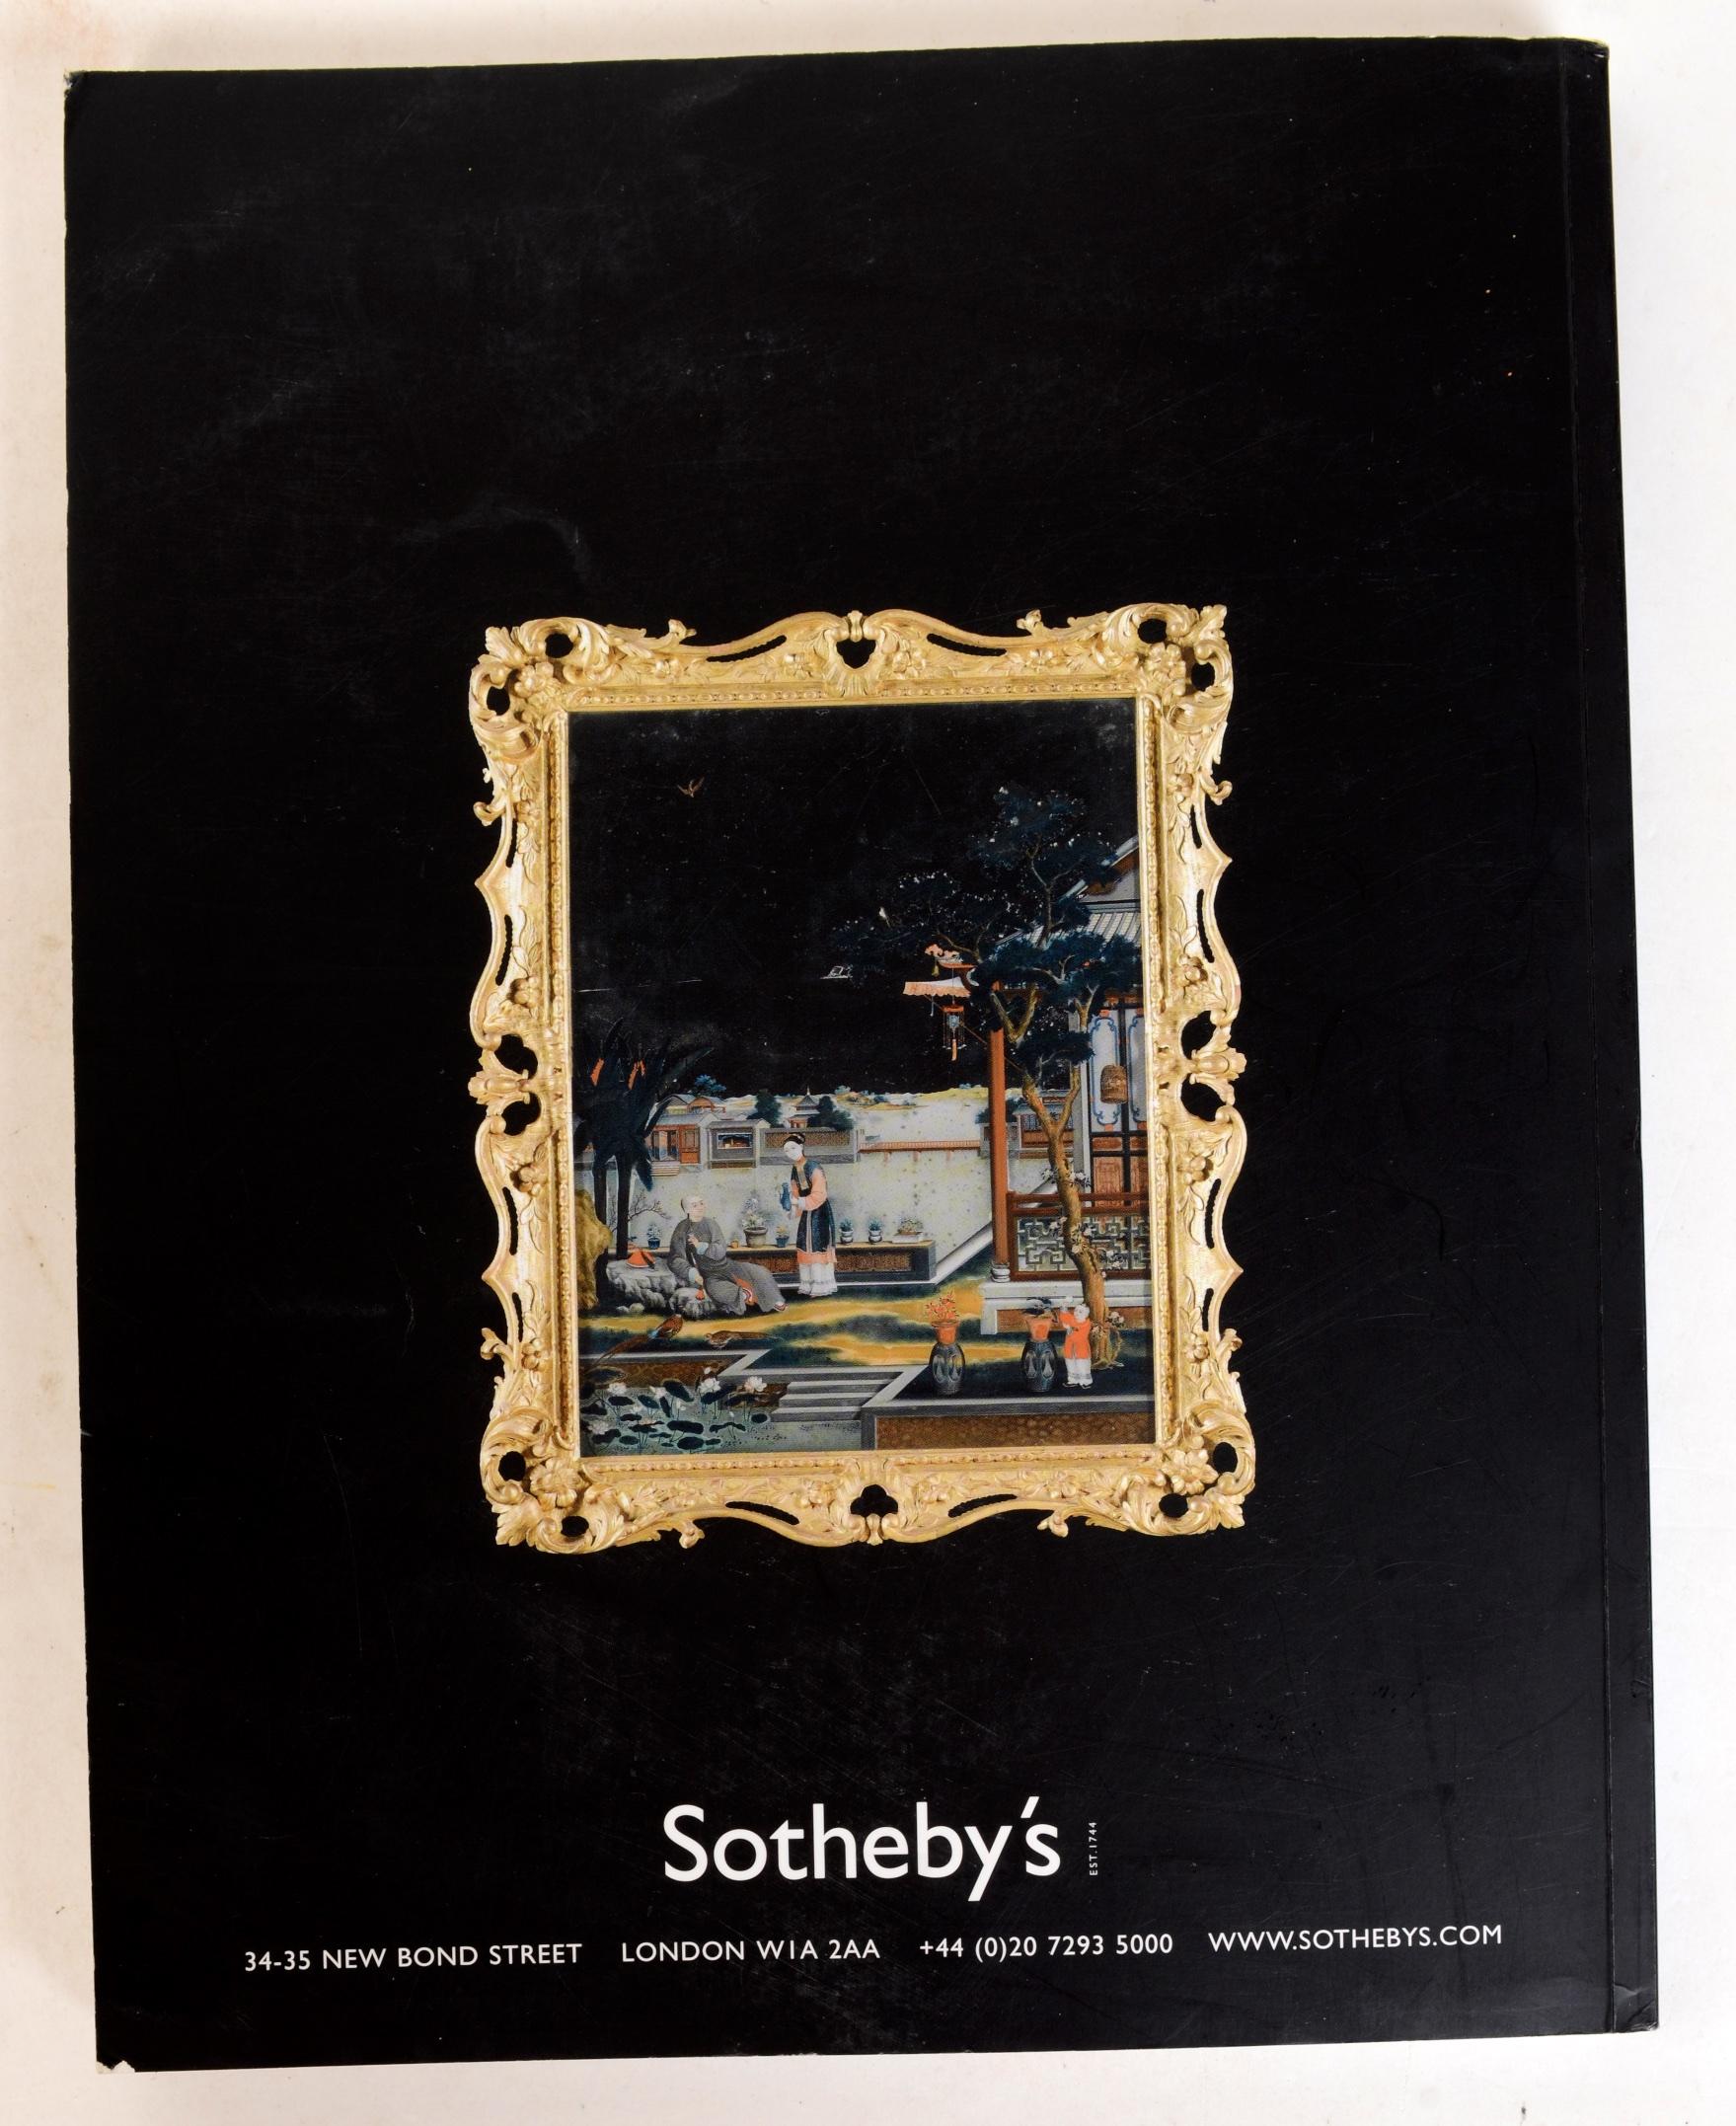 Sotheby's : Important English Furniture including the Horlick Collection, Londres, 5 juin 2007. Première édition à couverture souple de 256 sur 303 pp. toutes illustrées en couleur. Avec des résultats. La vente comprenait une paire de magnifiques